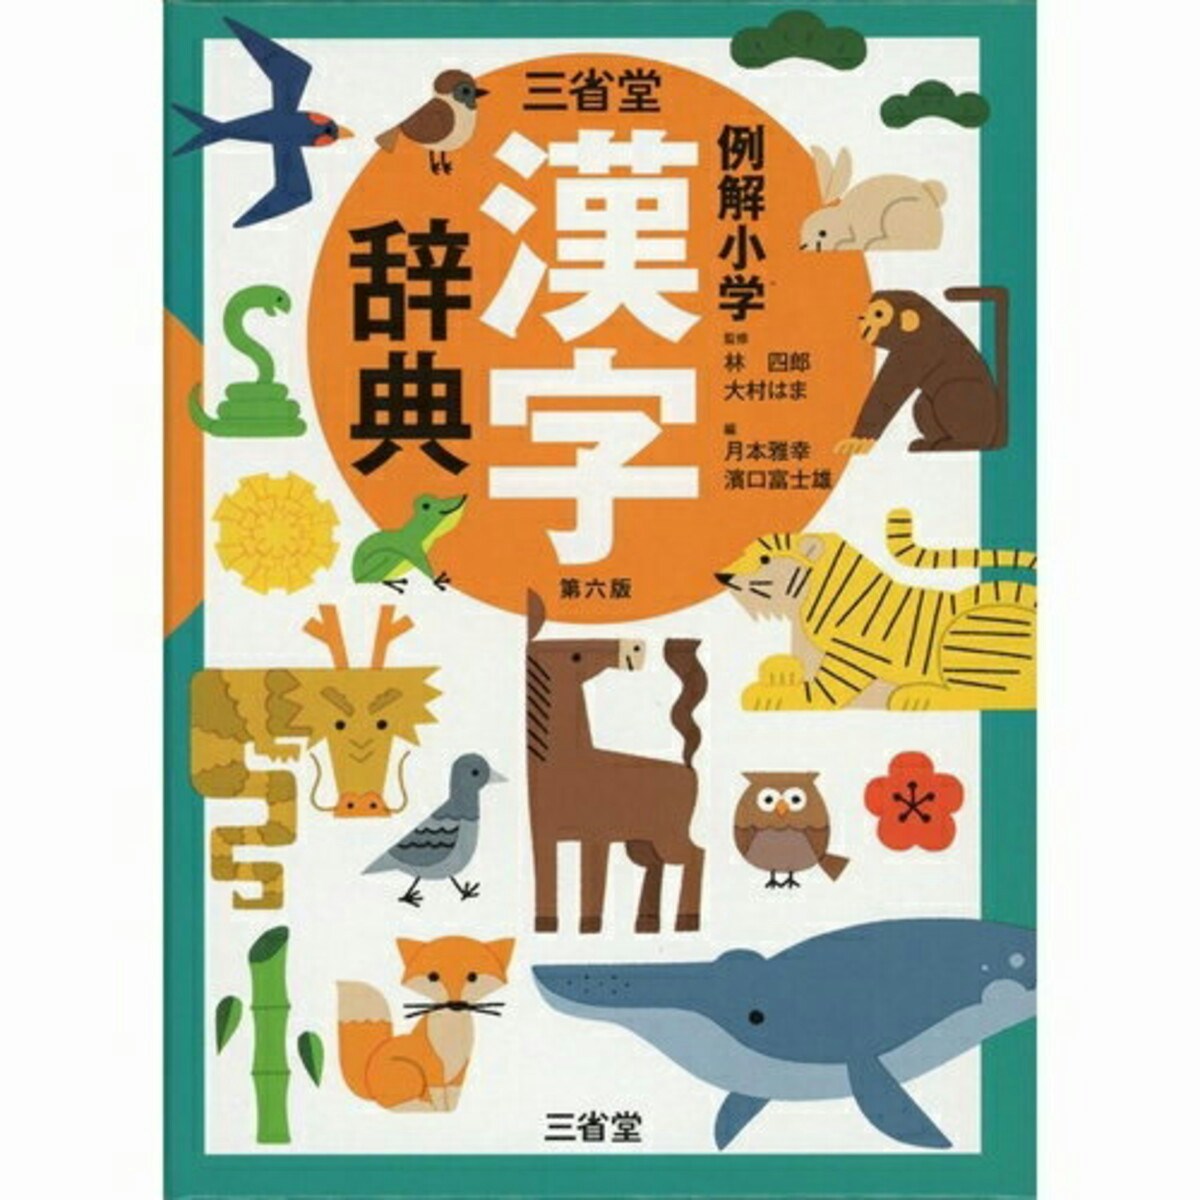 22年版 小学生におすすめの漢字辞典 辞書アプリ10選 ママリ